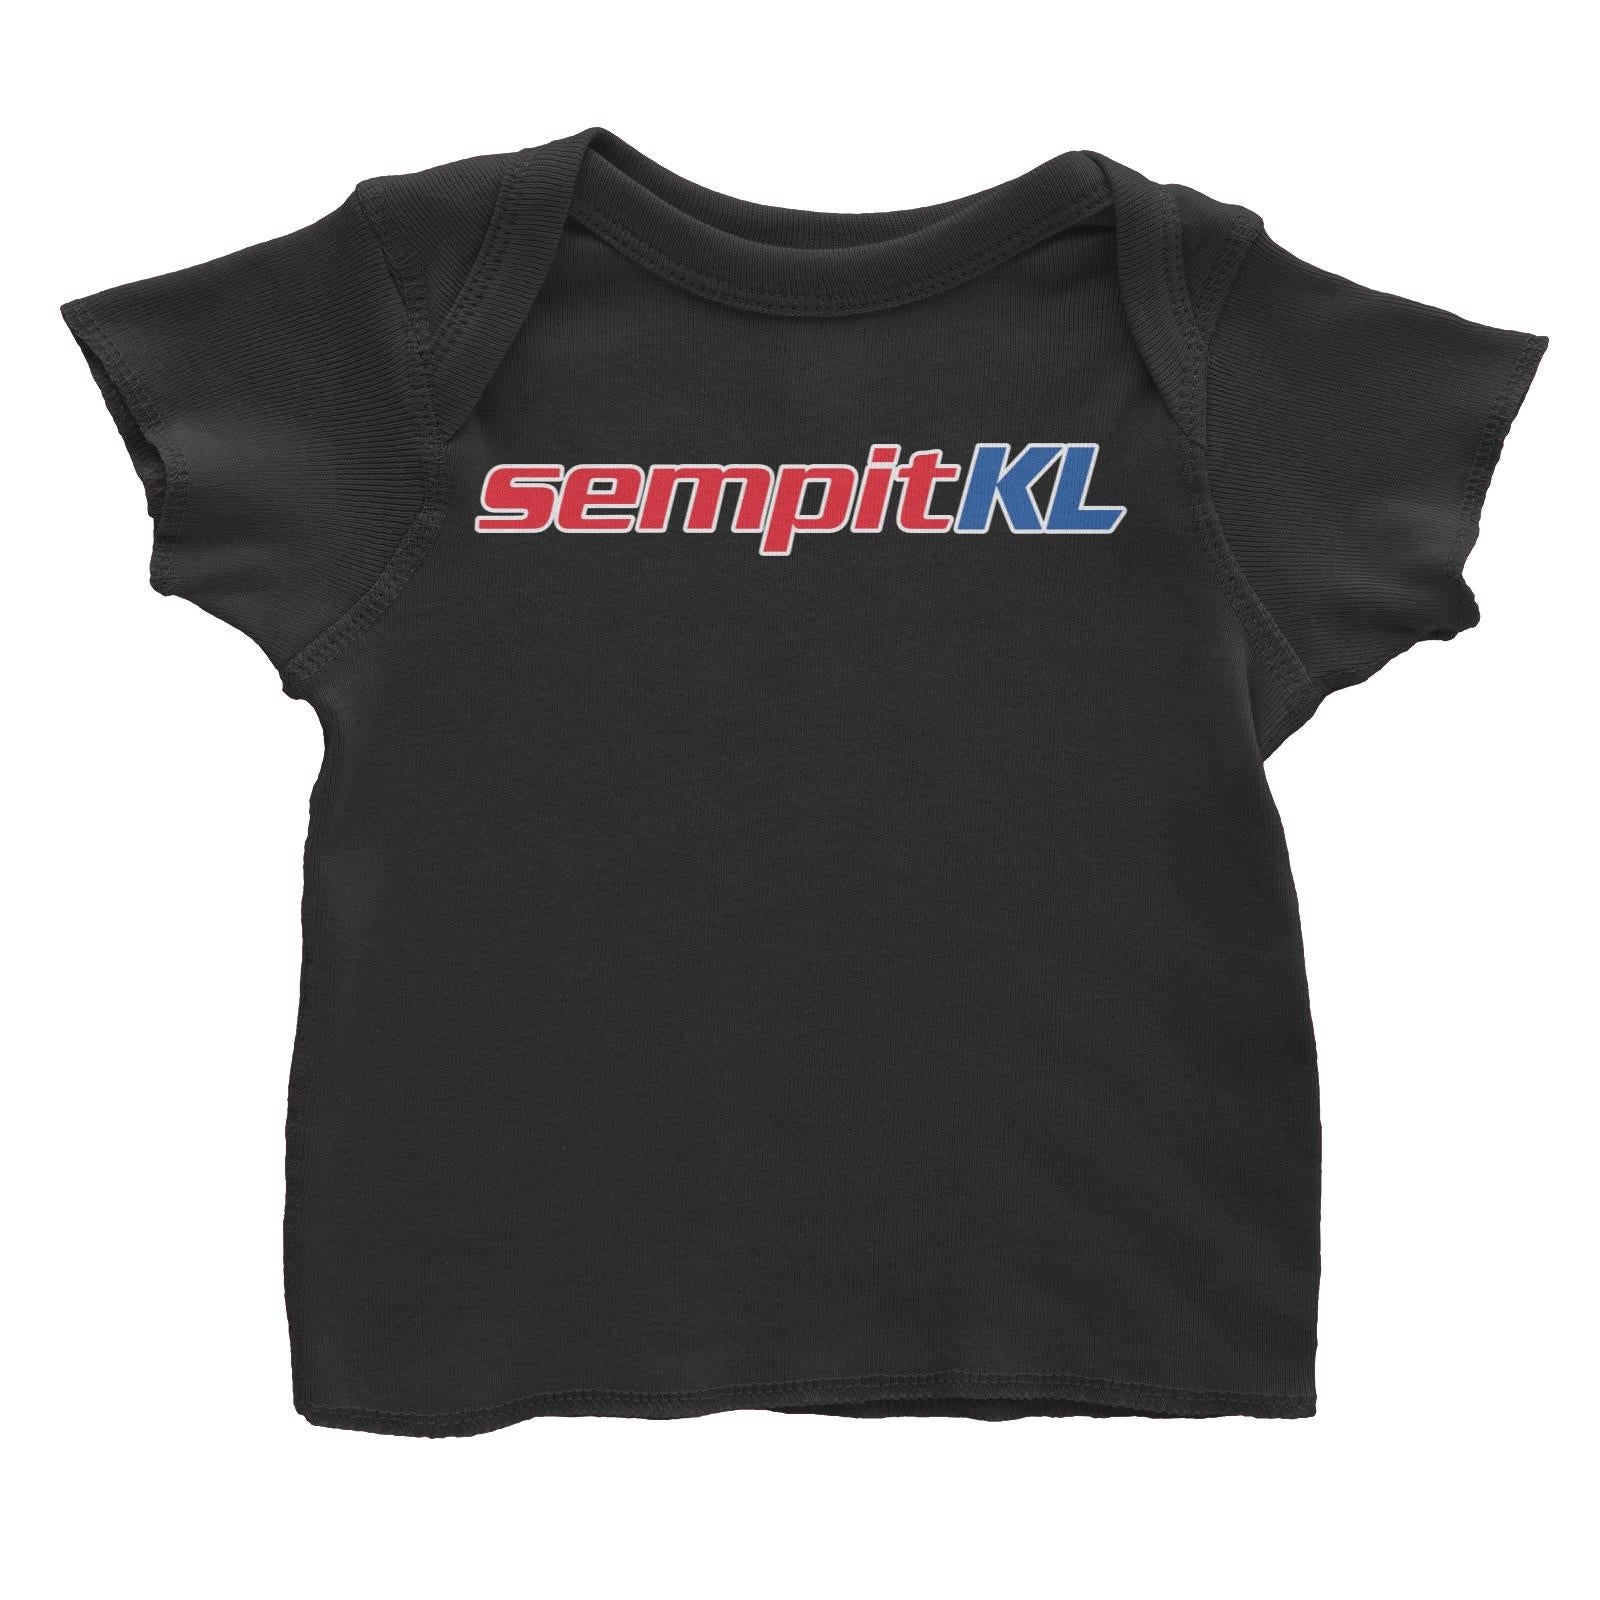 Slang Statement Sempitkl Baby T-Shirt